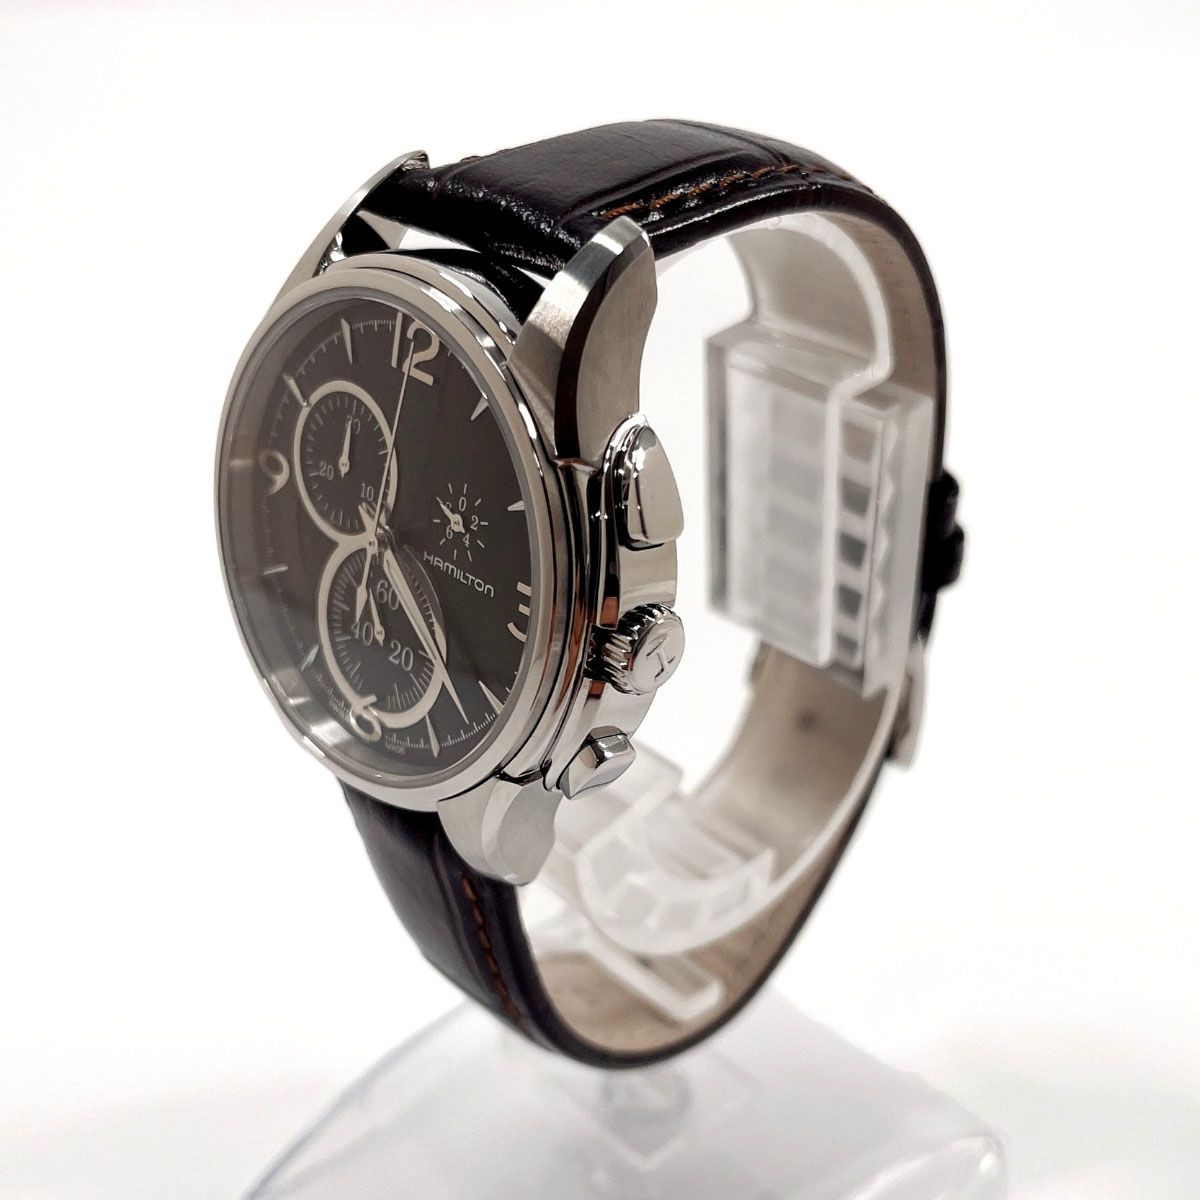 ハミルトン 腕時計 ジャズマスター クロノグラフ H323720 シルバー